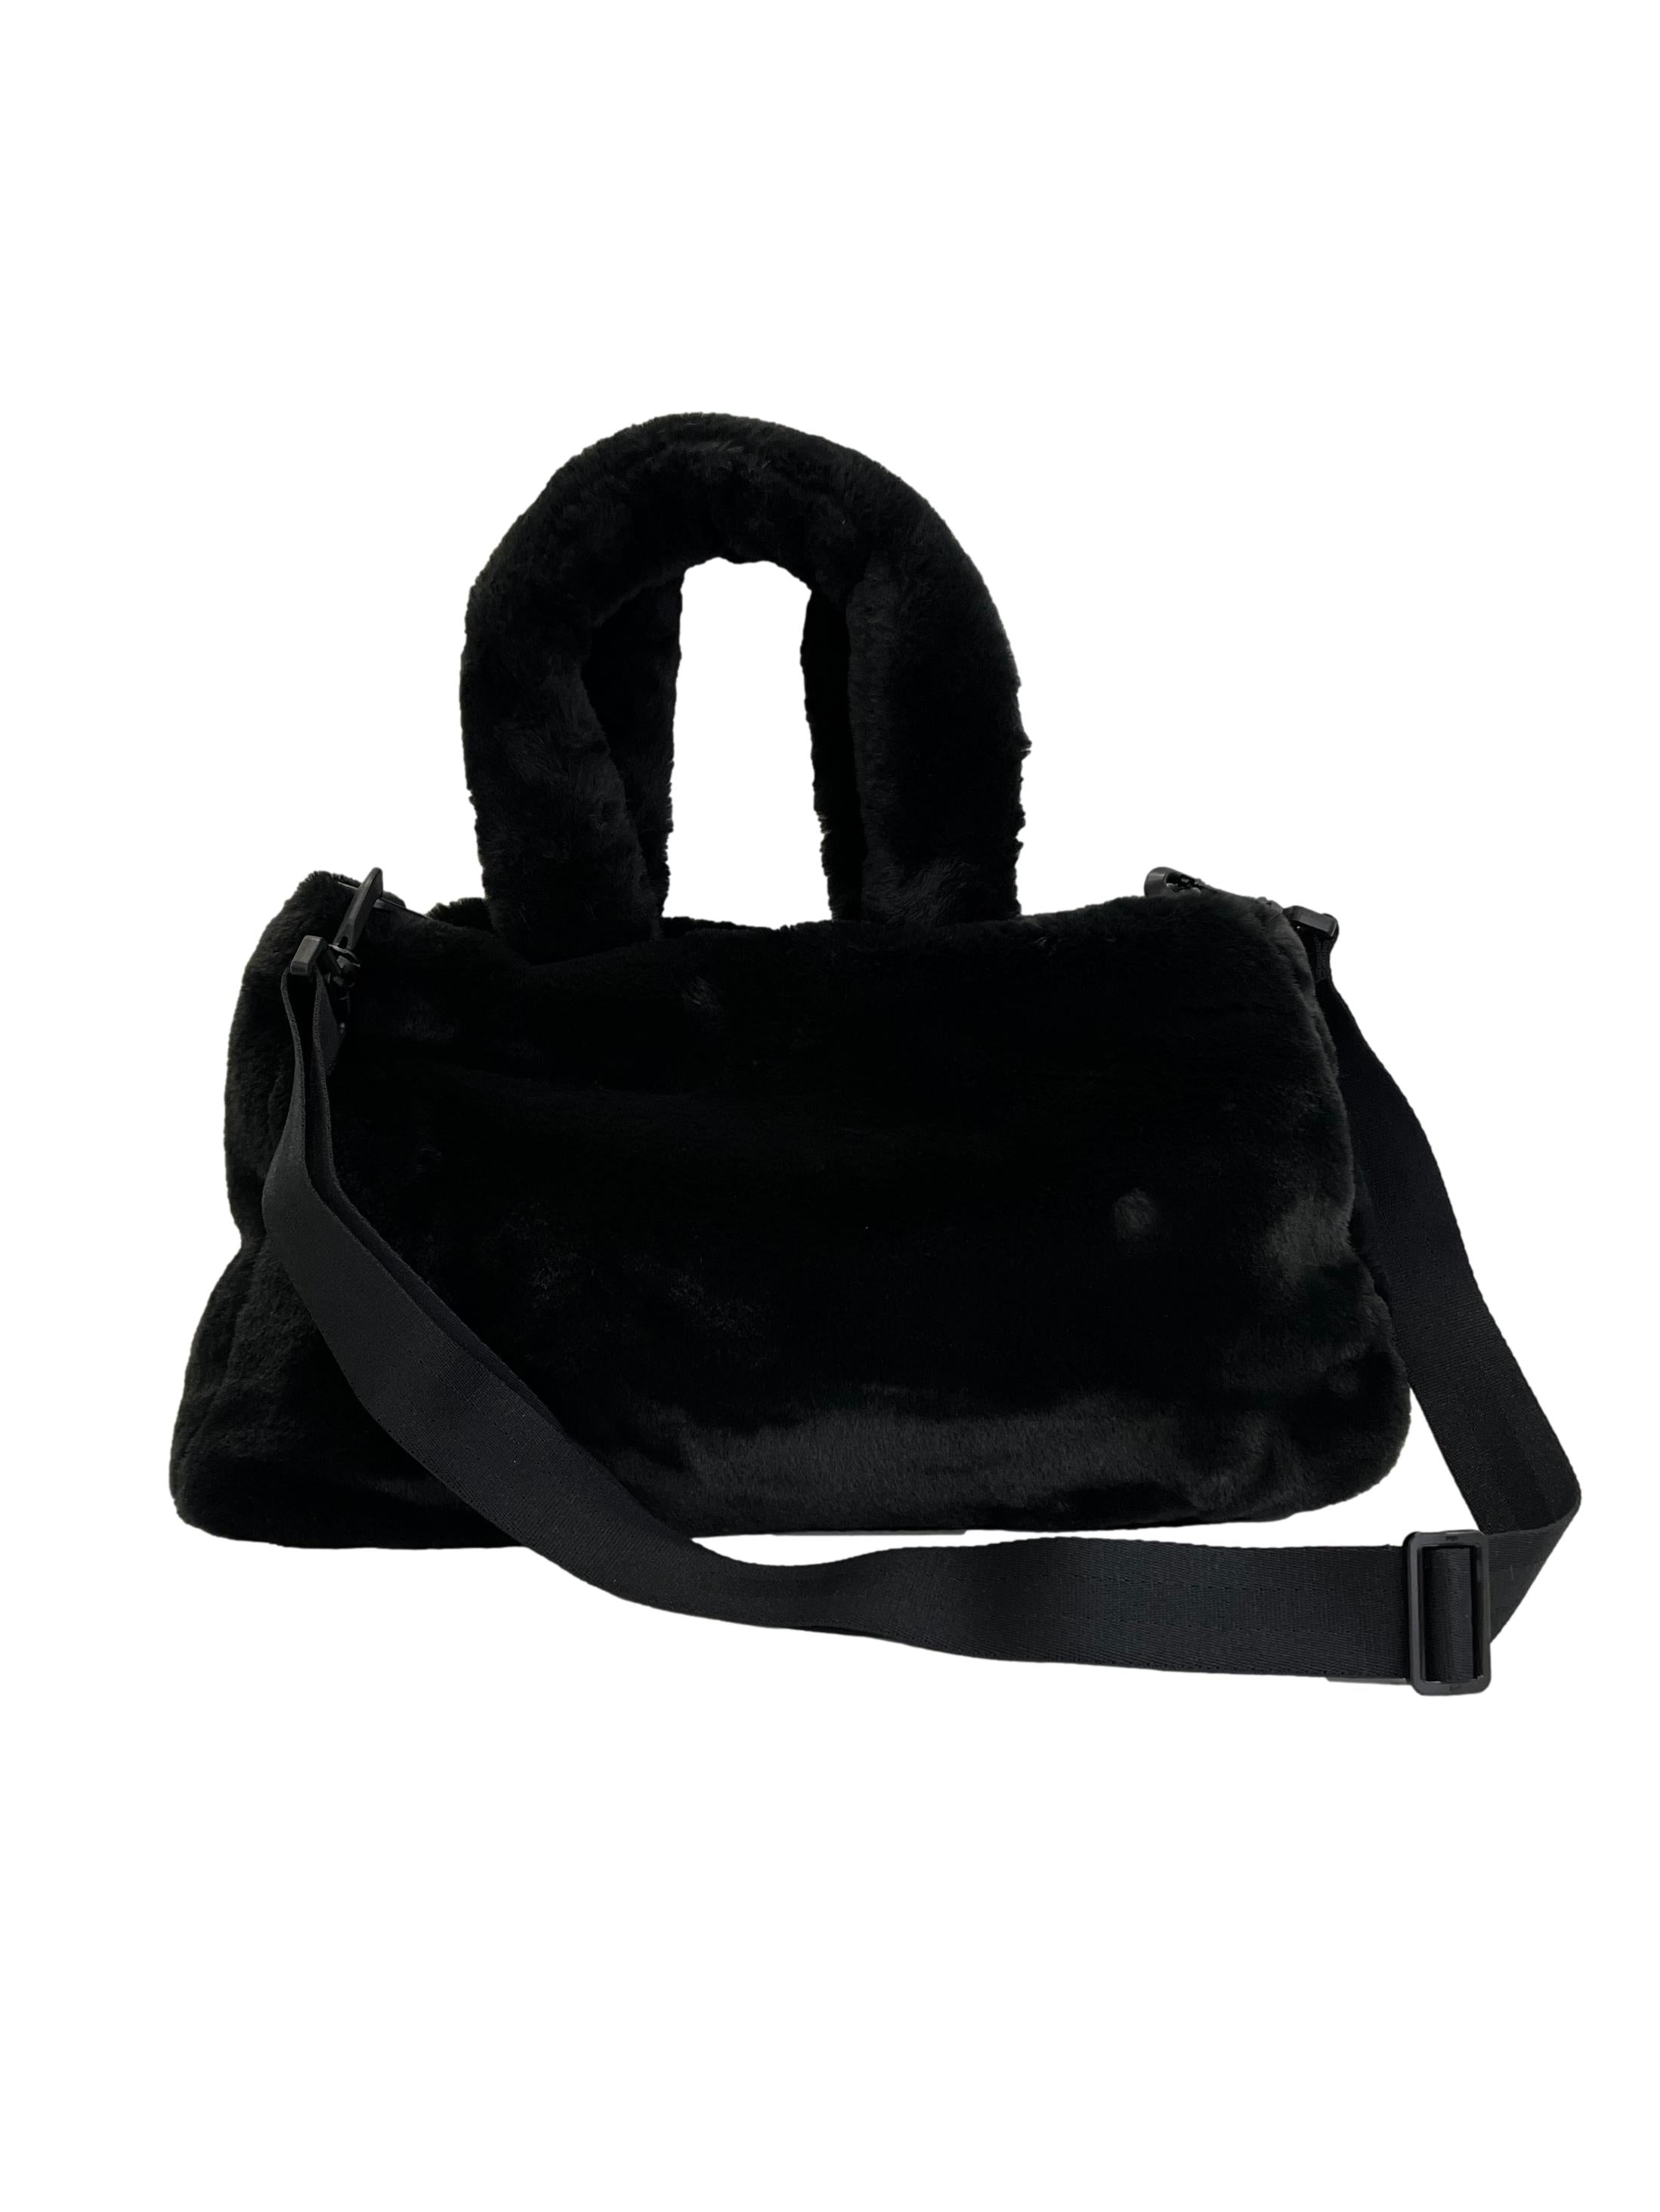 Black Fur Tote Bag